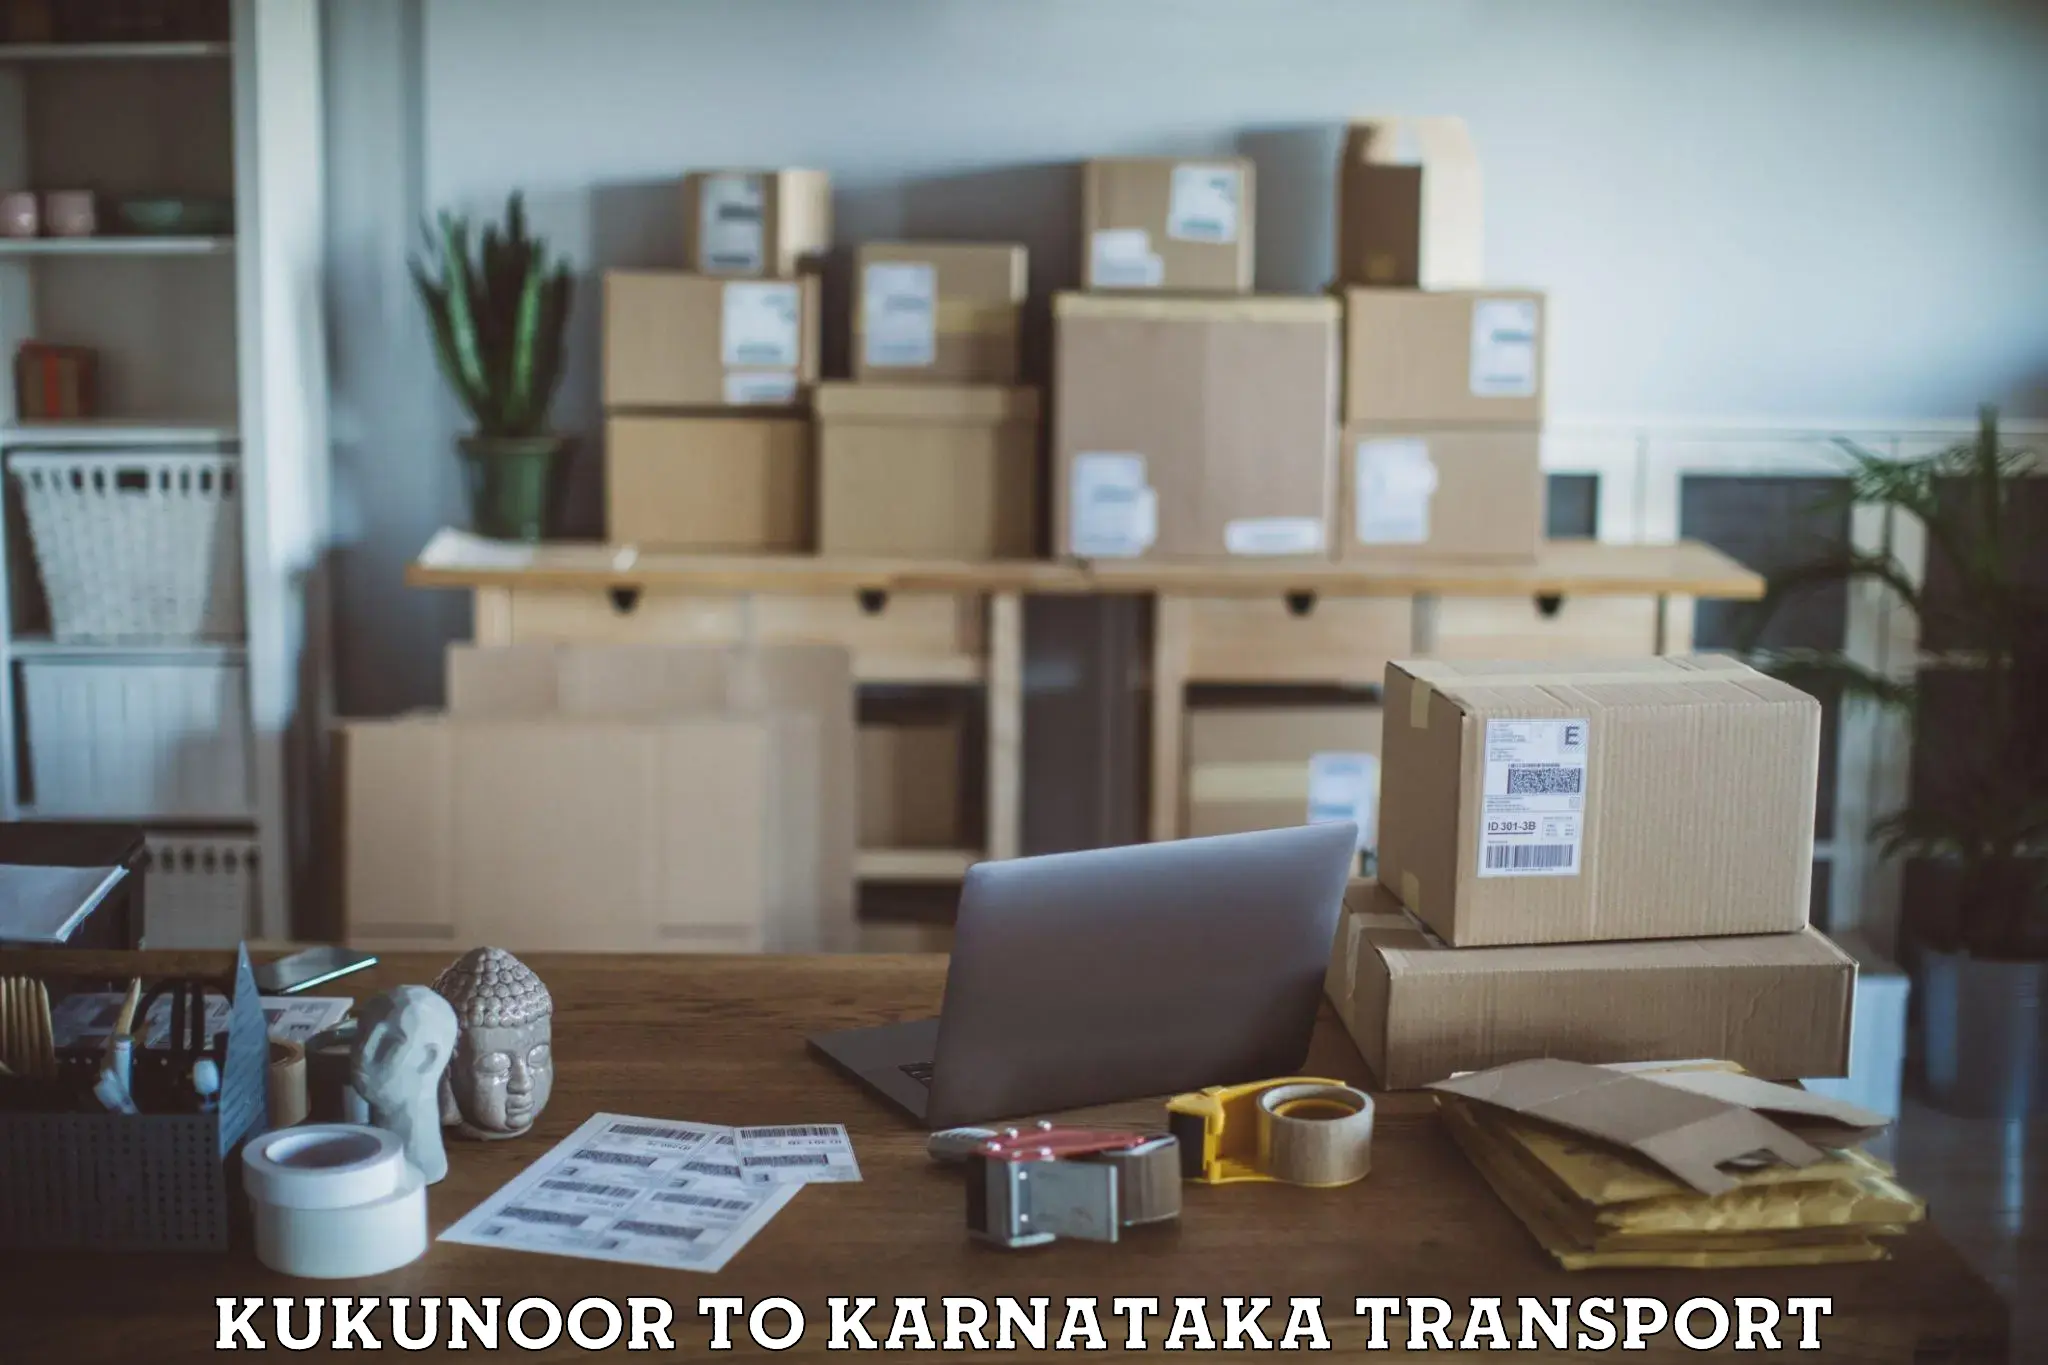 Transport in sharing Kukunoor to IIIT Raichur